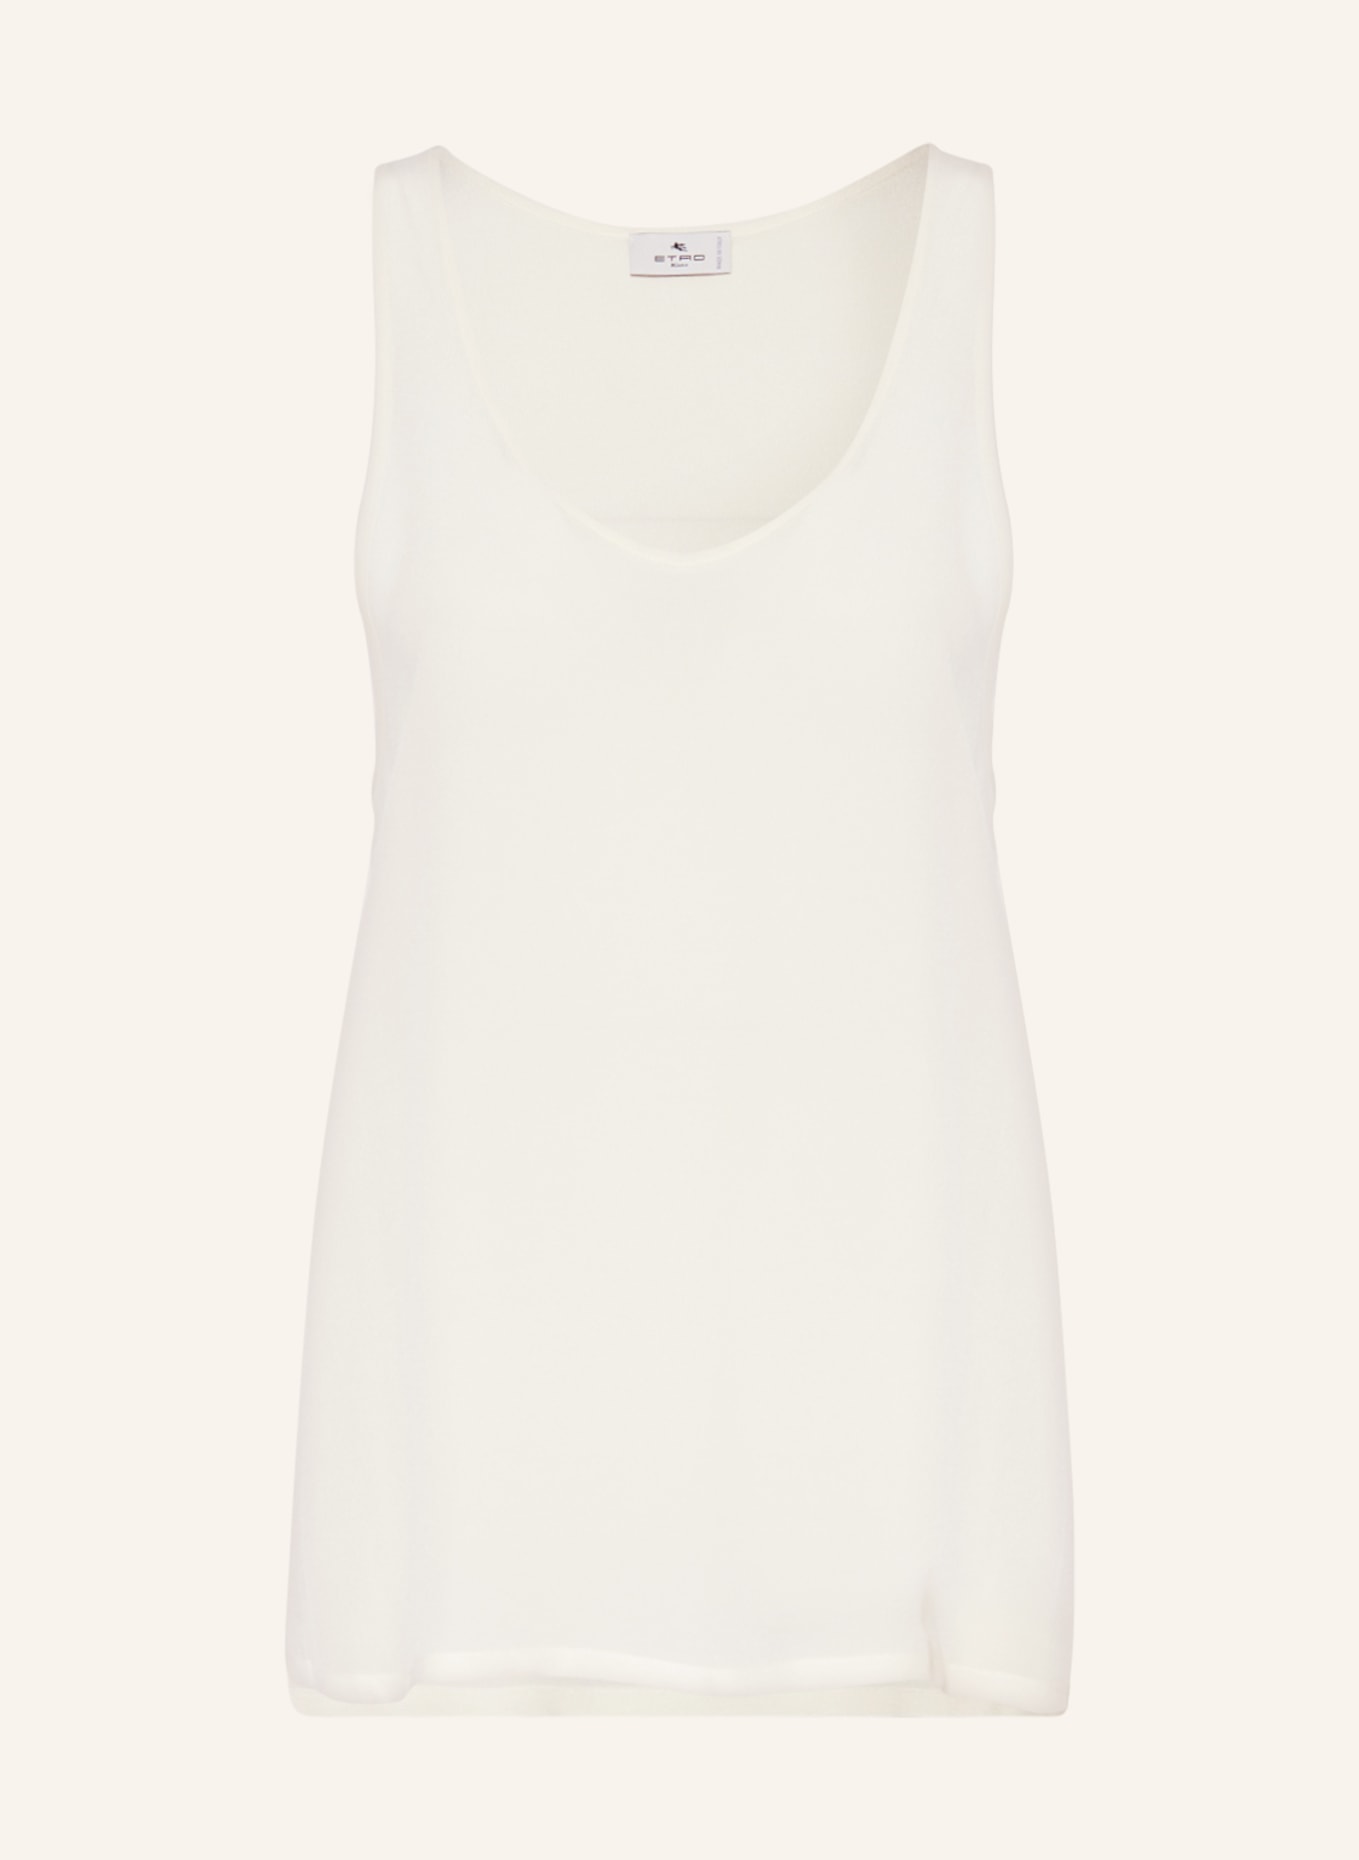 ETRO Silk top, Color: 990 WHITE (Image 1)